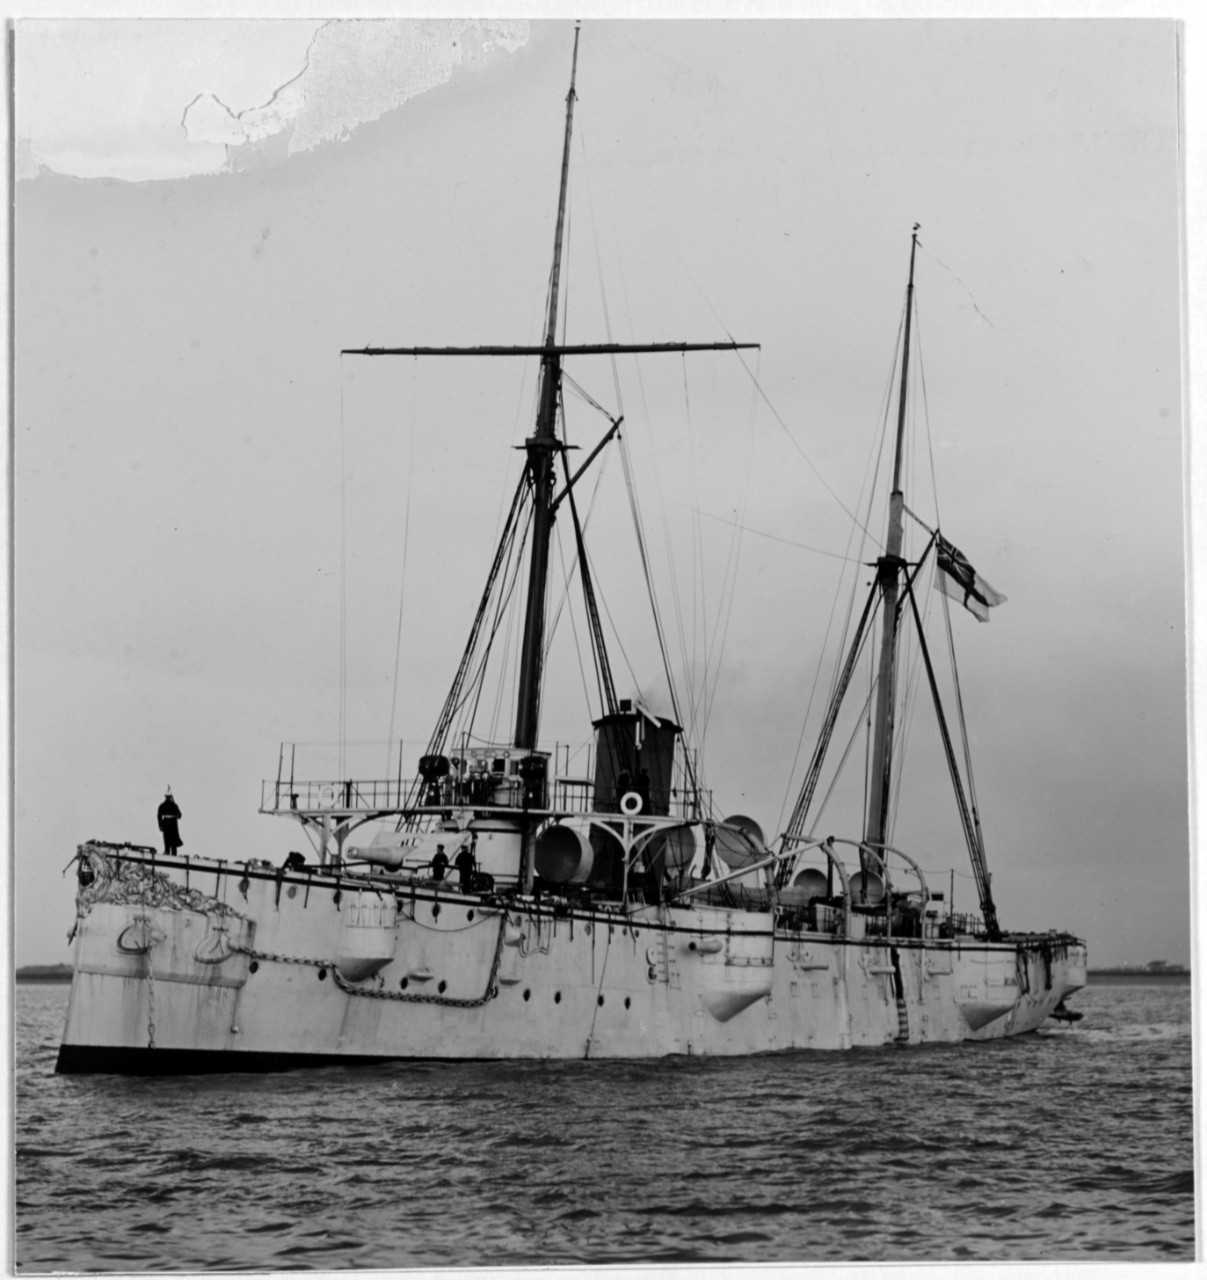 SEVERN (British Cruiser, 1885-1905)